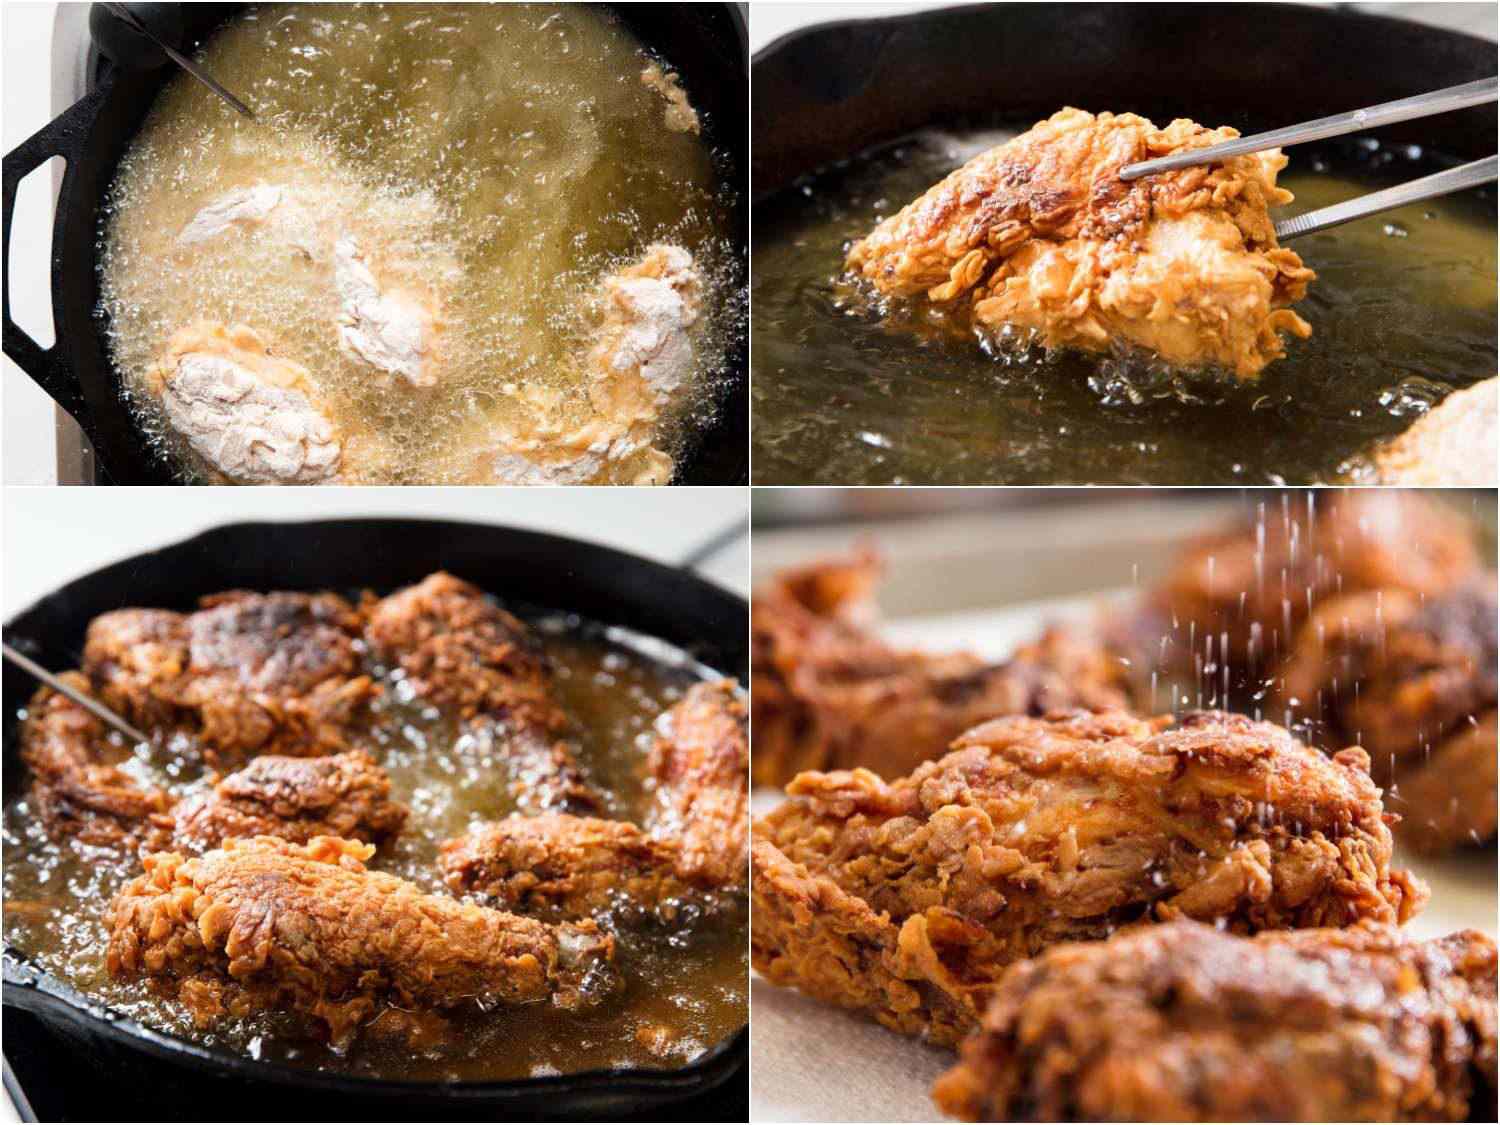 拼贴不同阶段的炸鸡:第一面在铸铁锅里煎，面有面粉，钳子翻动鸡肉，第二面煎鸡肉，盐撒在鸡肉上gydF4y2Ba